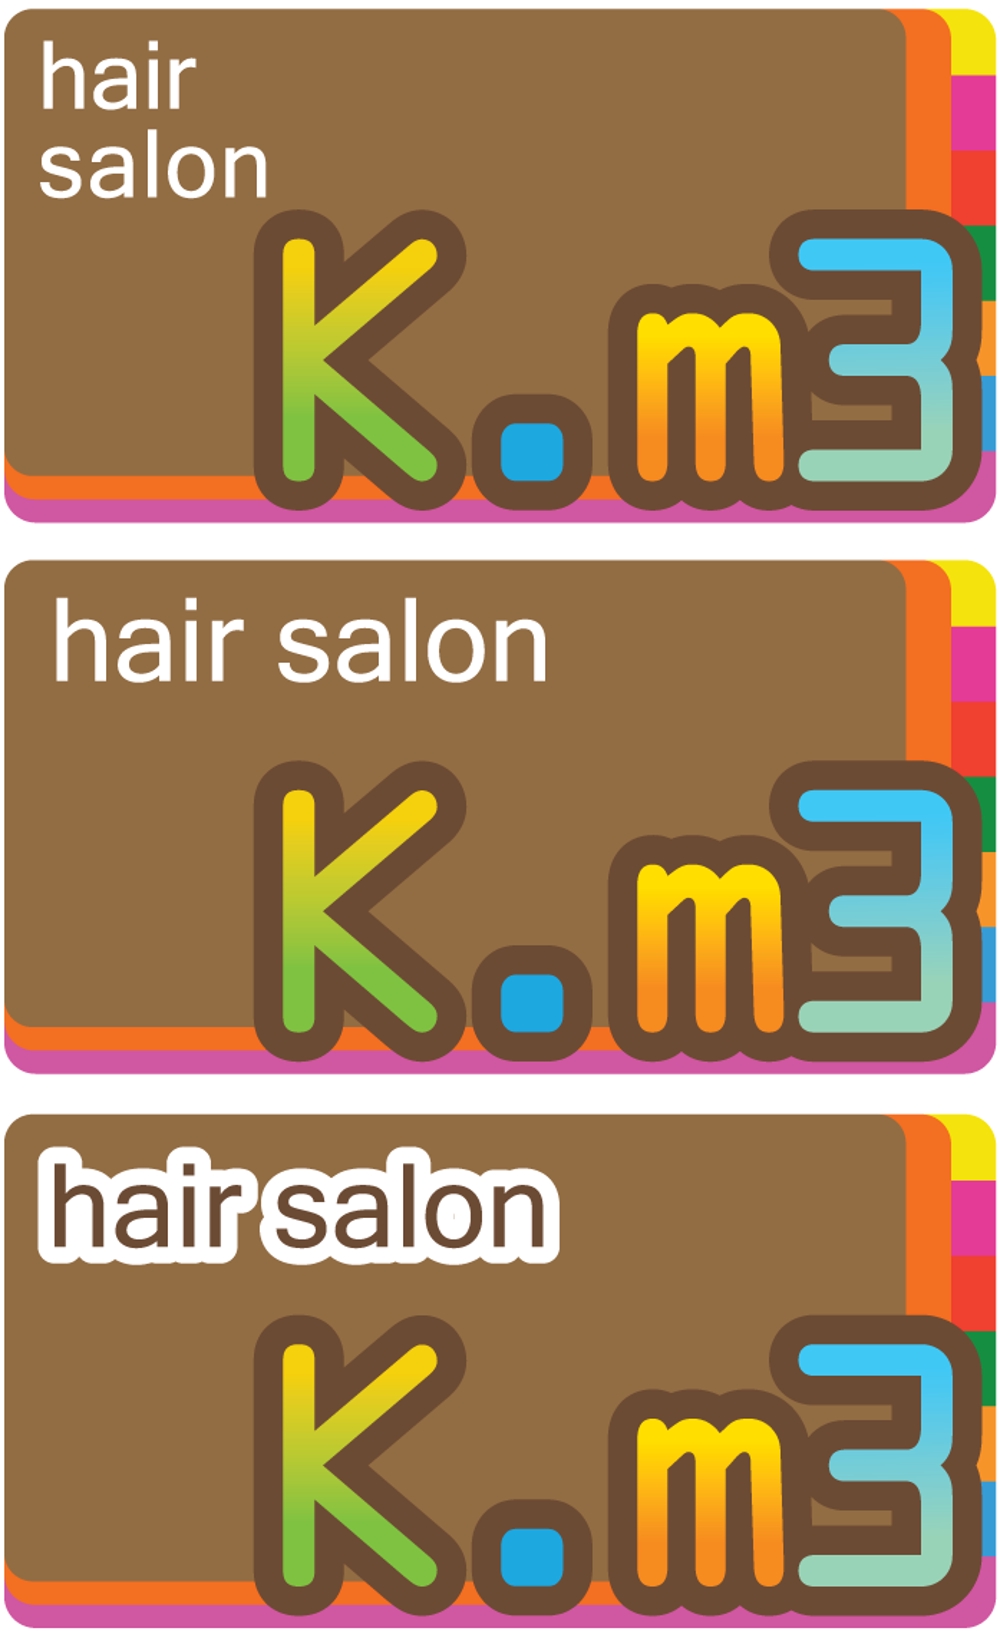 hair salon k.m3 part1.png